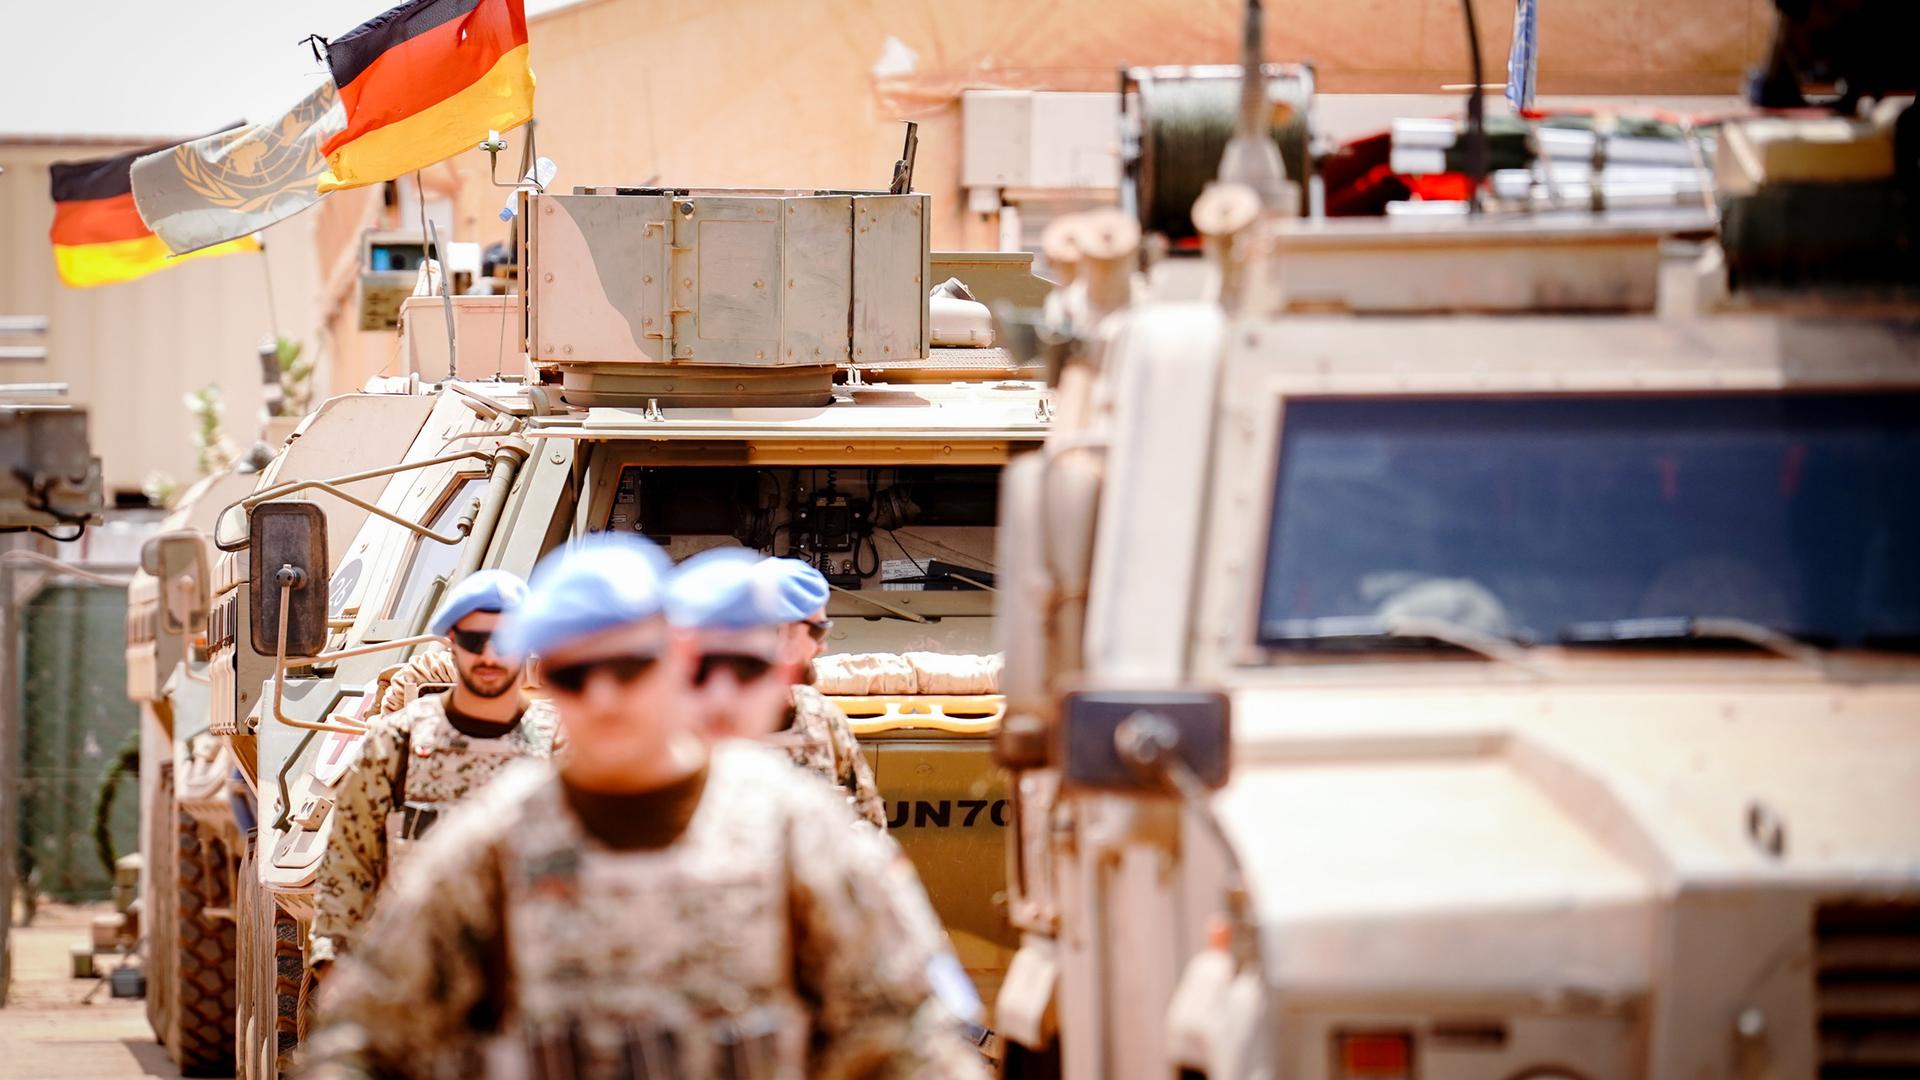 Die Deutschlandfahne und die Flagge der Vereinten Nationen wehen im Camp Castor in Gao, im Vordergrund sind Soldaten und gepanzerte Fahrzeuge zu sehen.